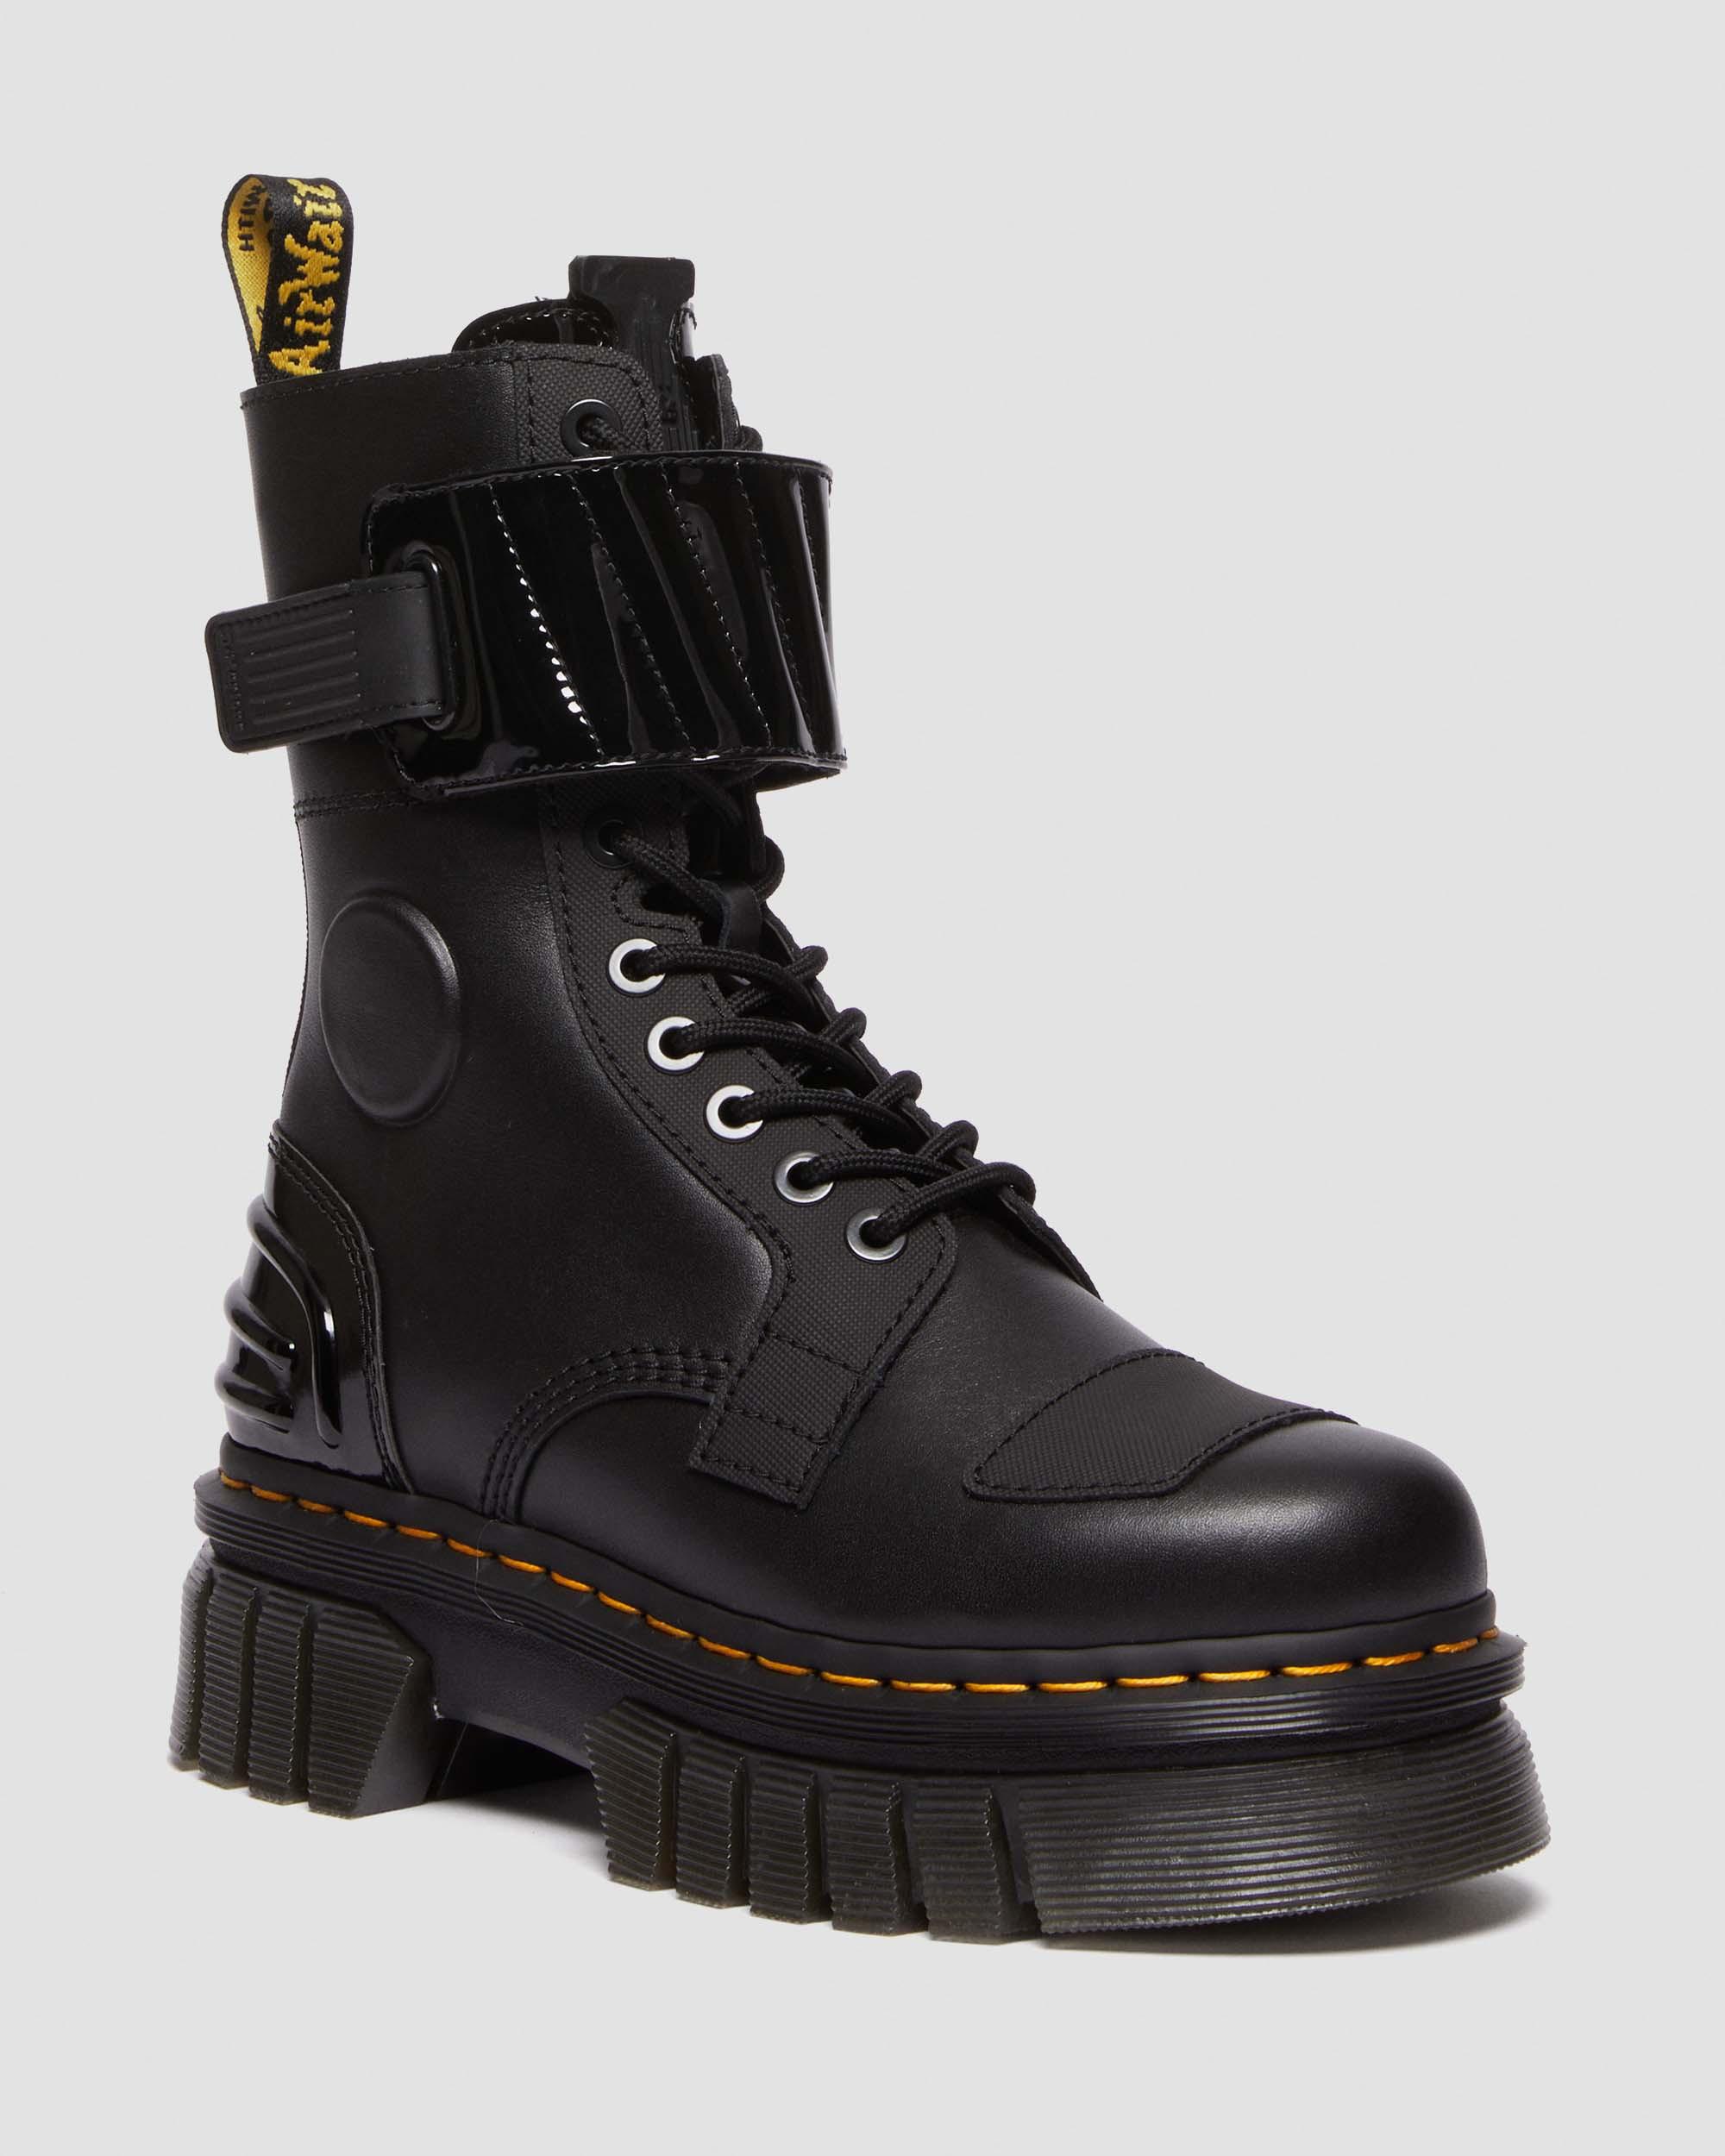 Jadon Boot Smooth Leather Platforms in Black | Dr. Martens